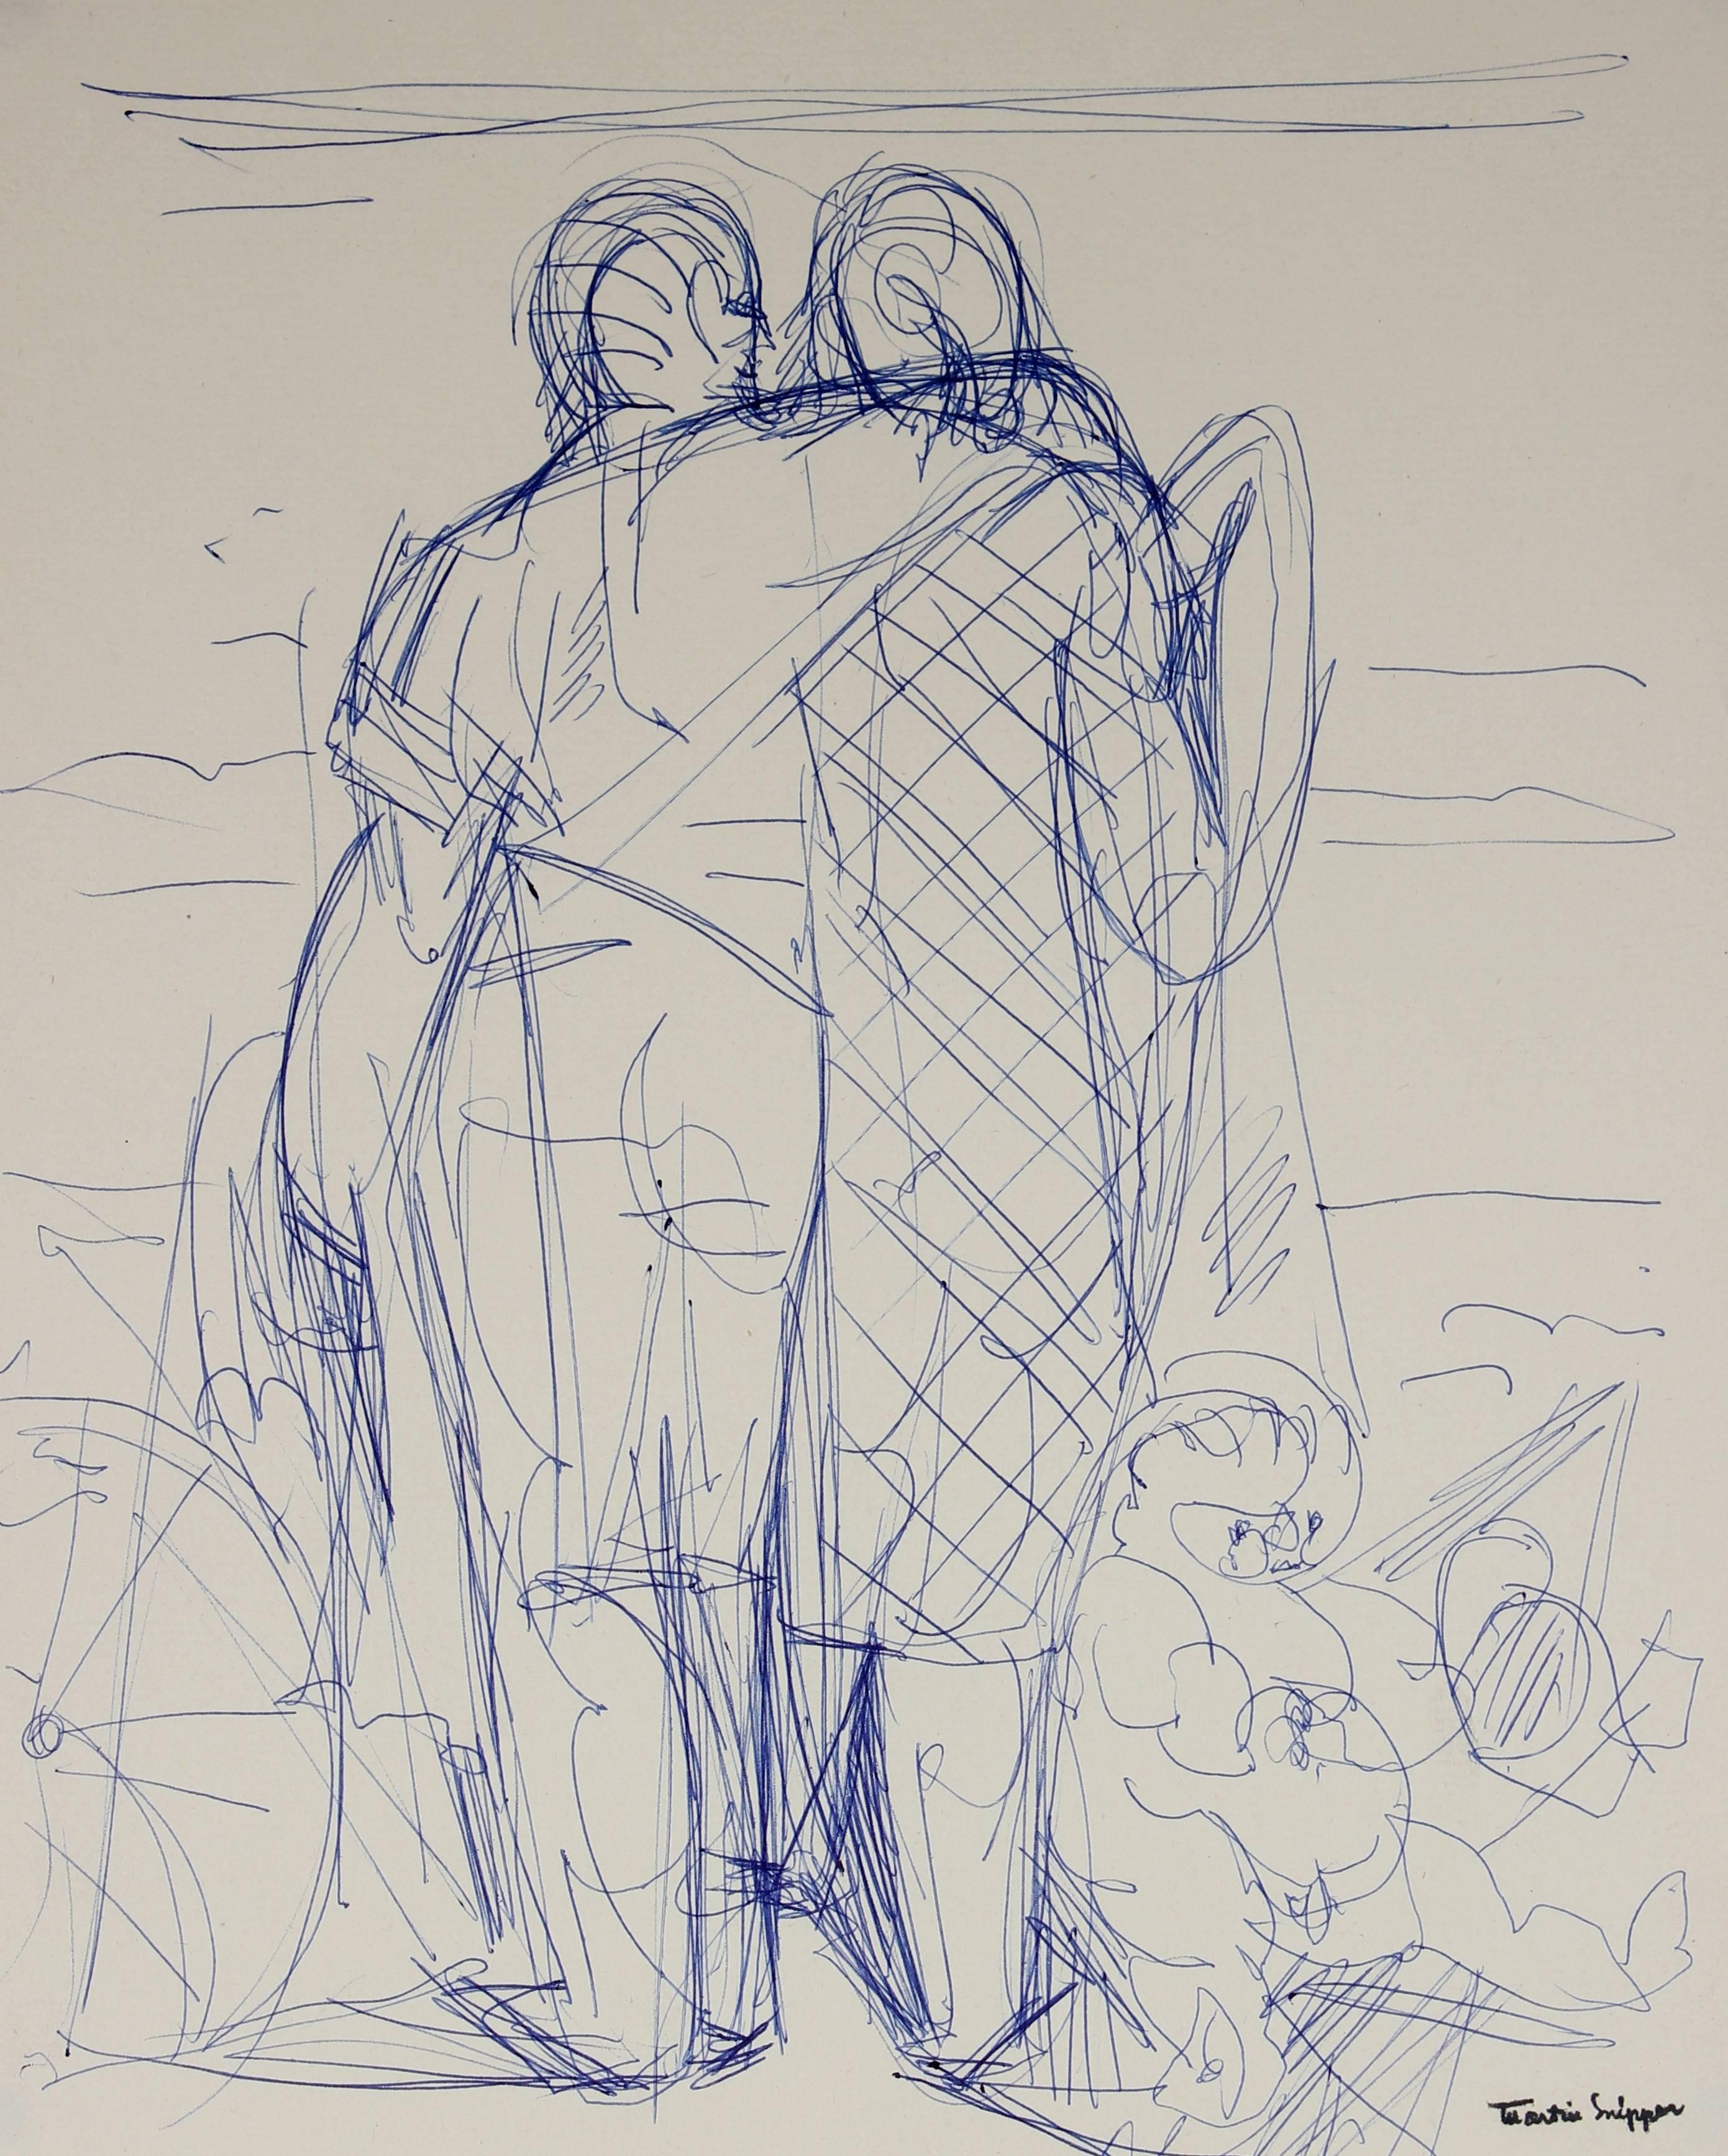 Martin Snipper Figurative Art - Embracing Figures Sketch in Blue Ink